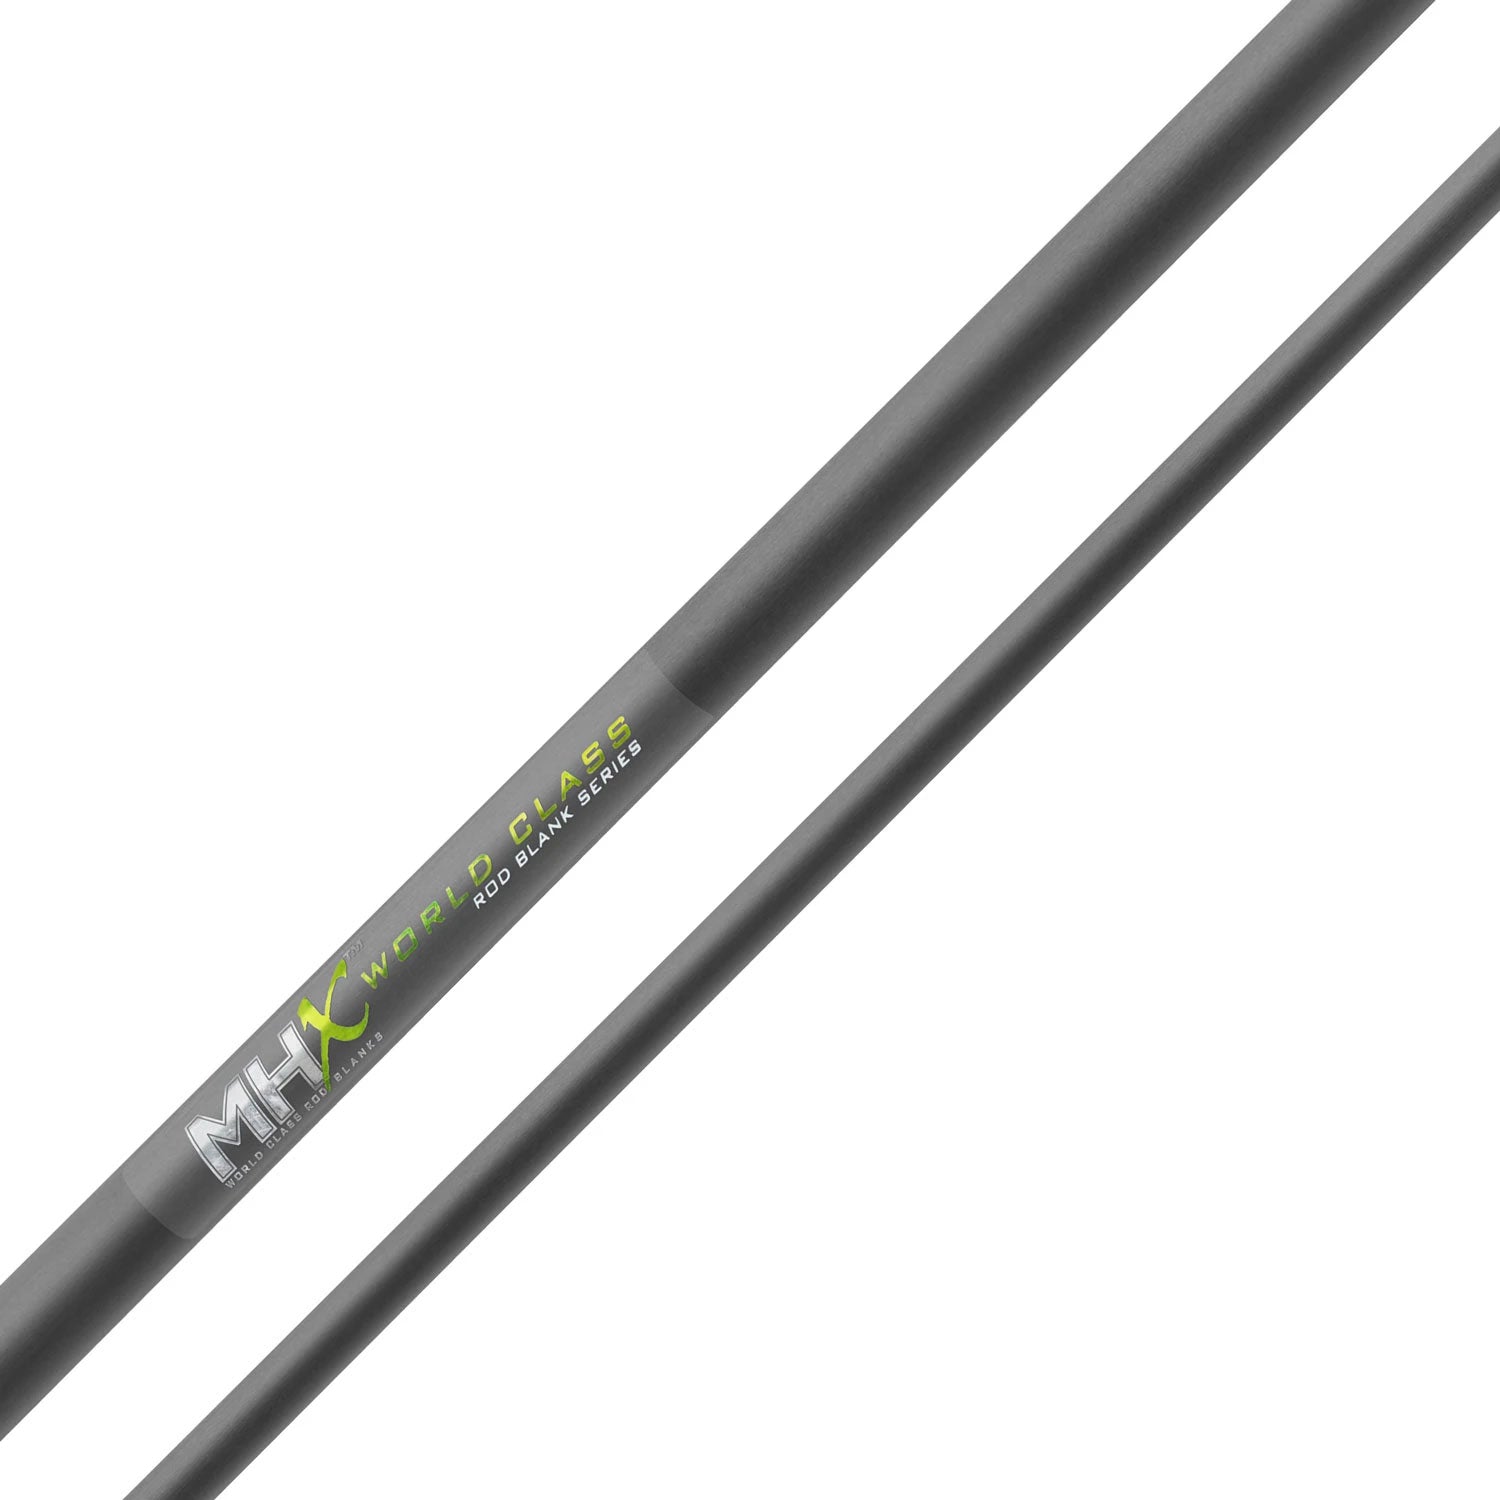 MHX 7'6" Med-Heavy Popping Rod Blank - P904-2-MHX